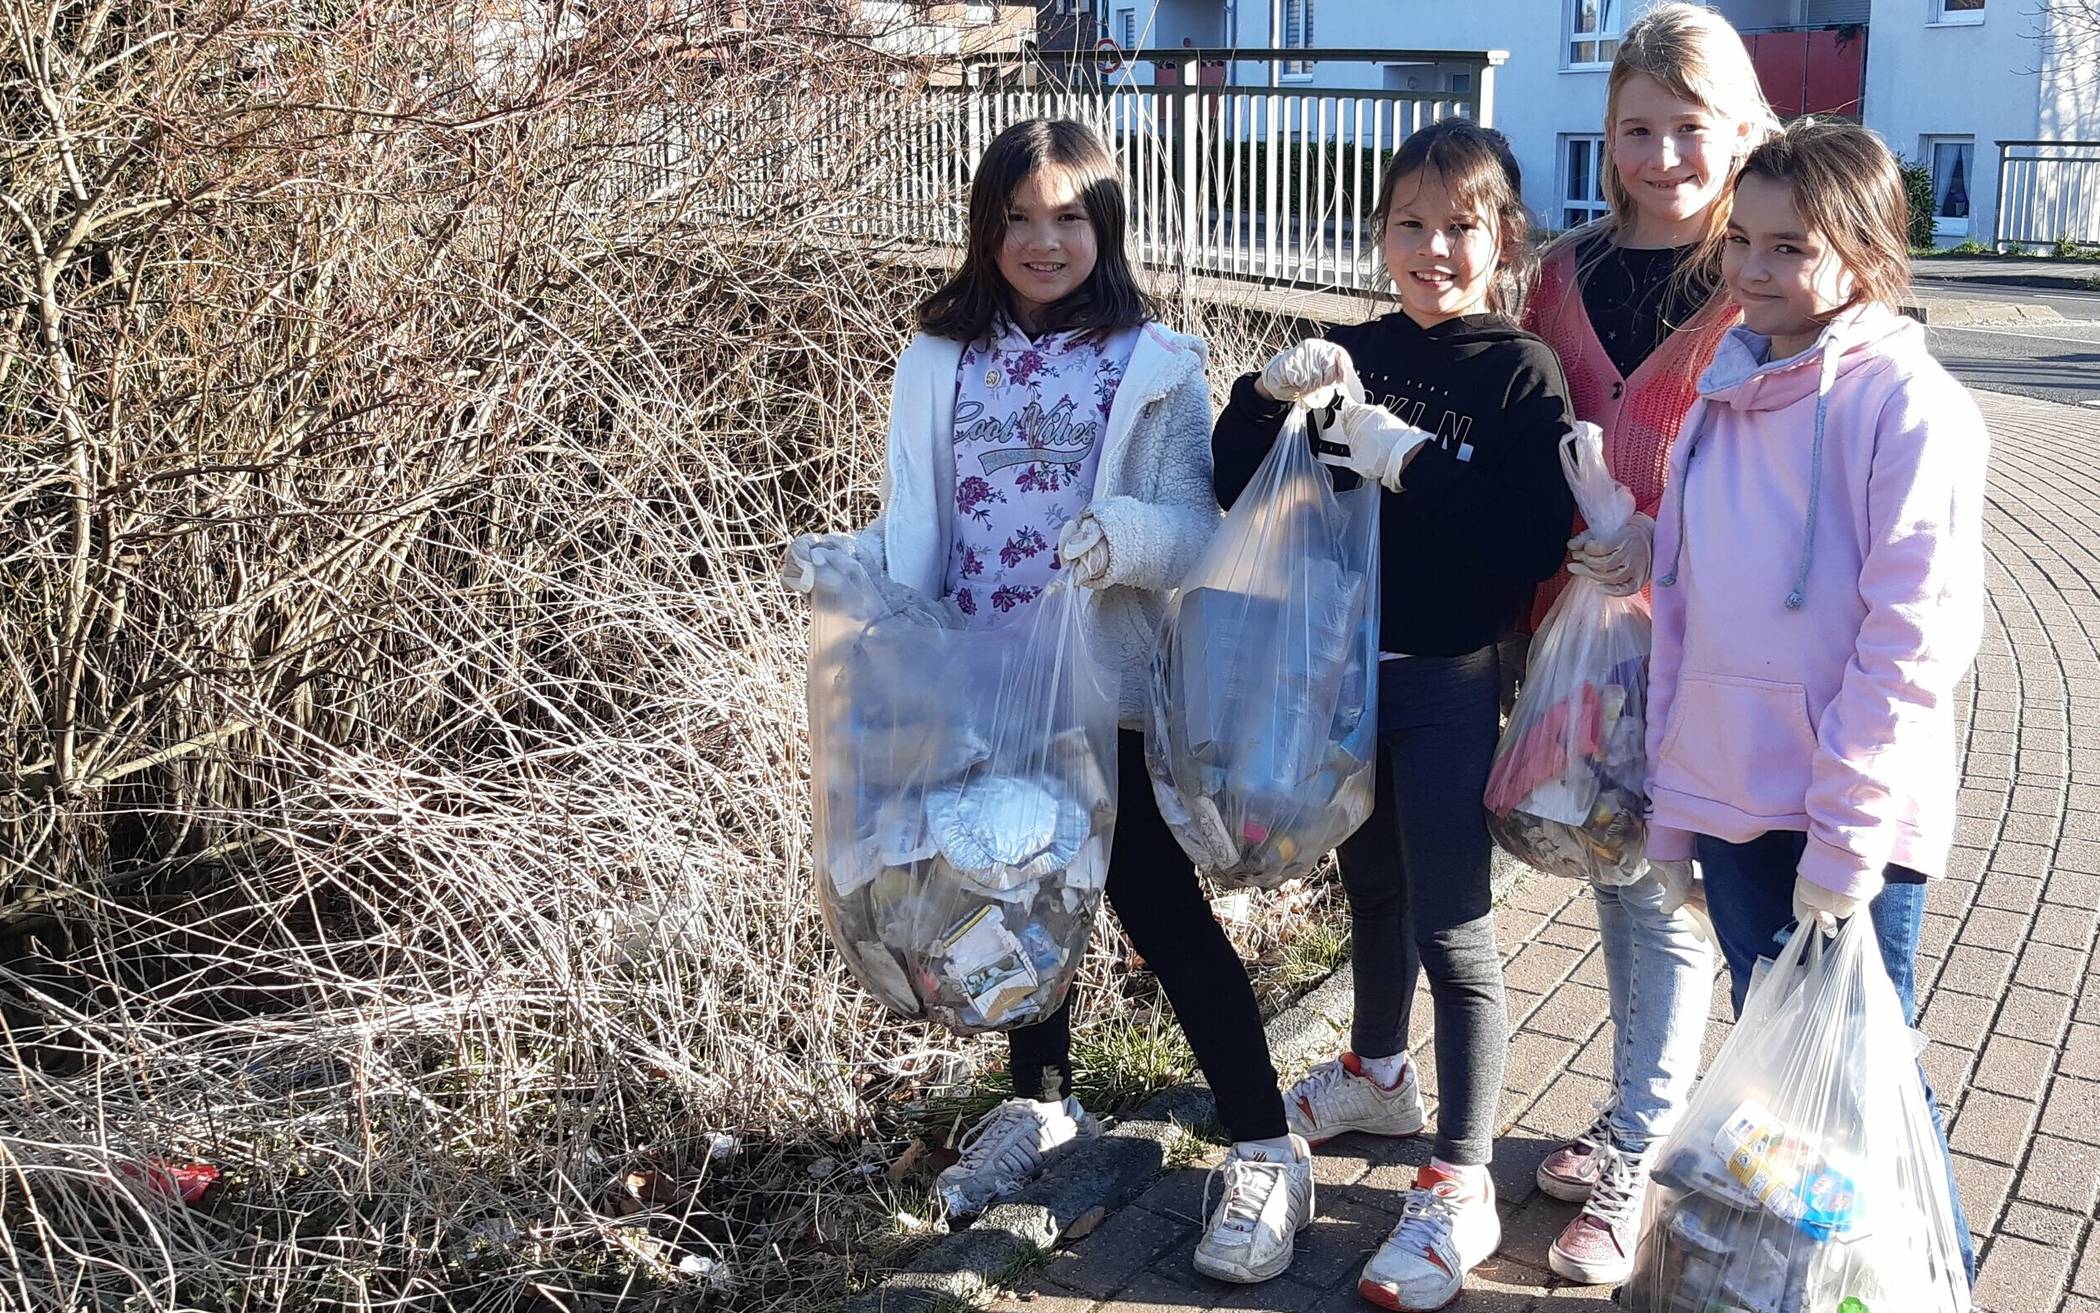  Maya, Leni, Juna und Maja machen sich regelmäßig mit Handschuhen und Beuteln auf den Weg, um Müll zu sammeln. Dabei kommt einiges zusammen.  